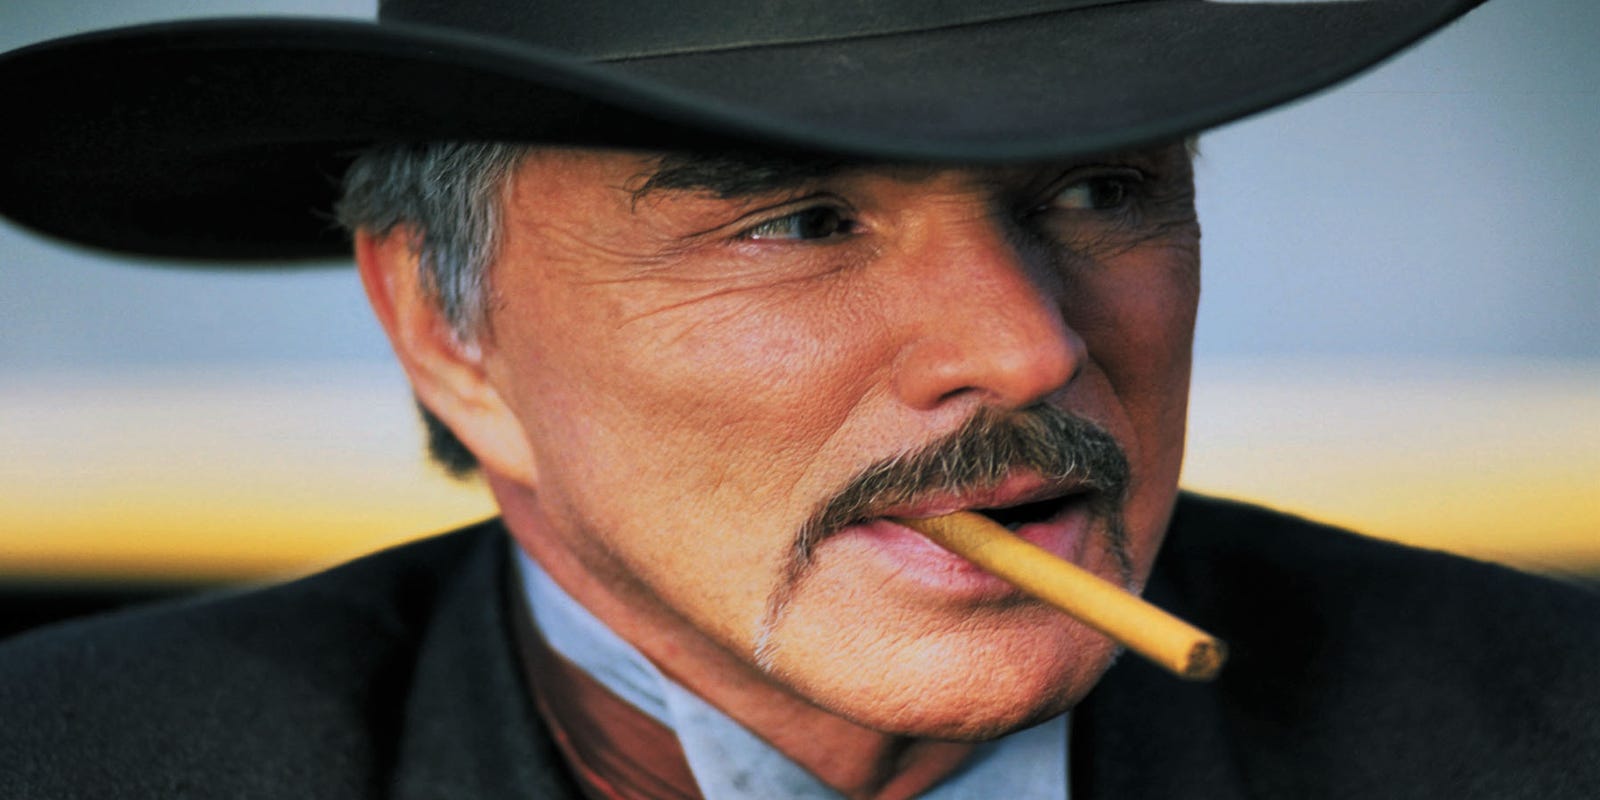 70s film superstar Burt Reynolds has died